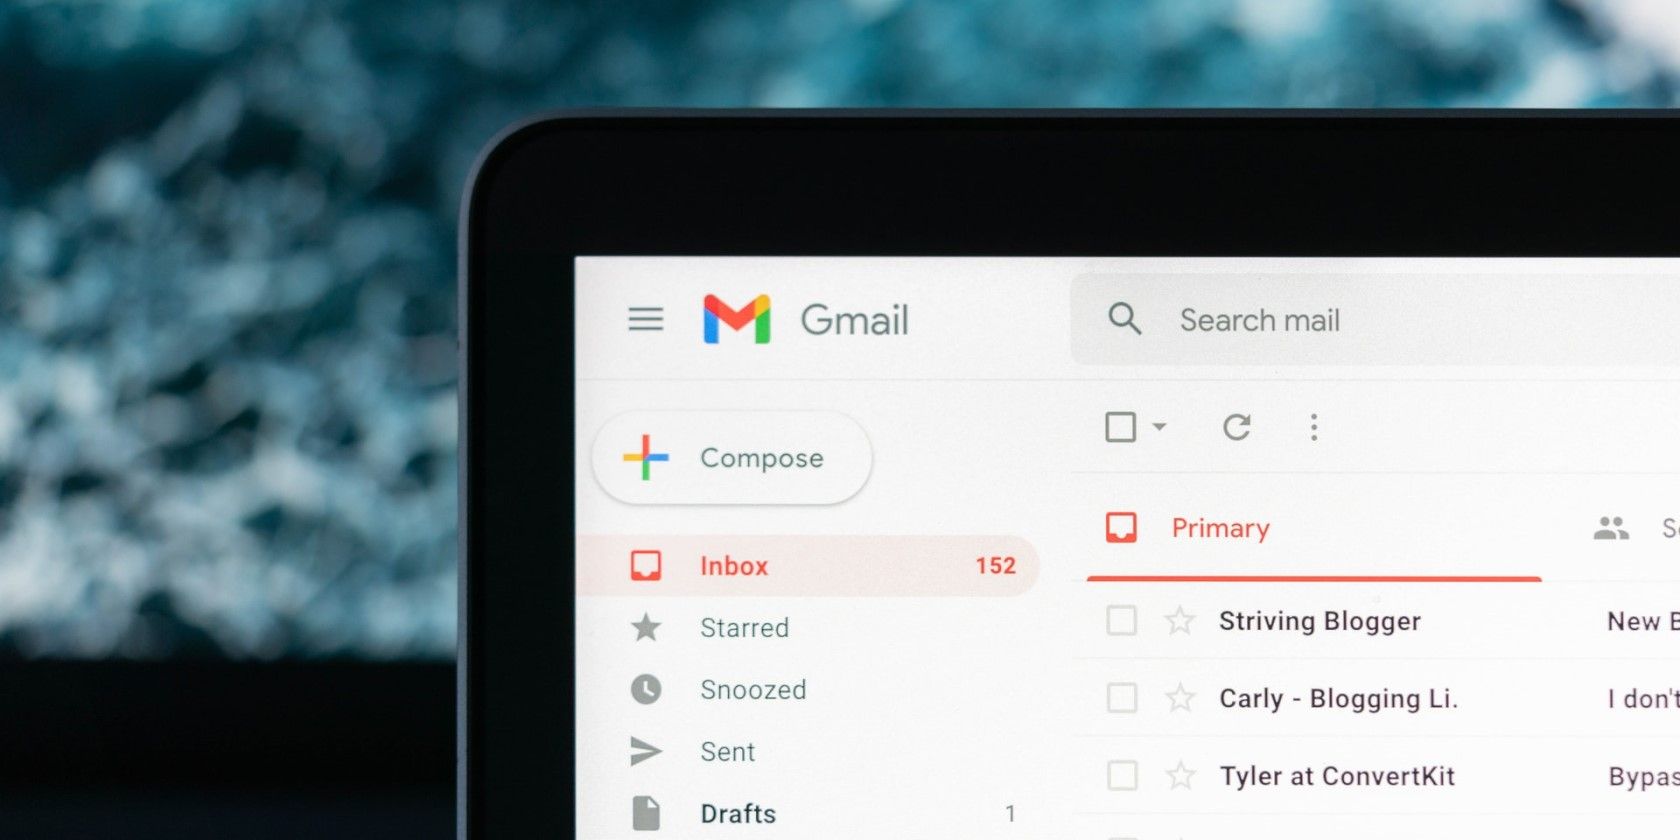 A Gmail inbox